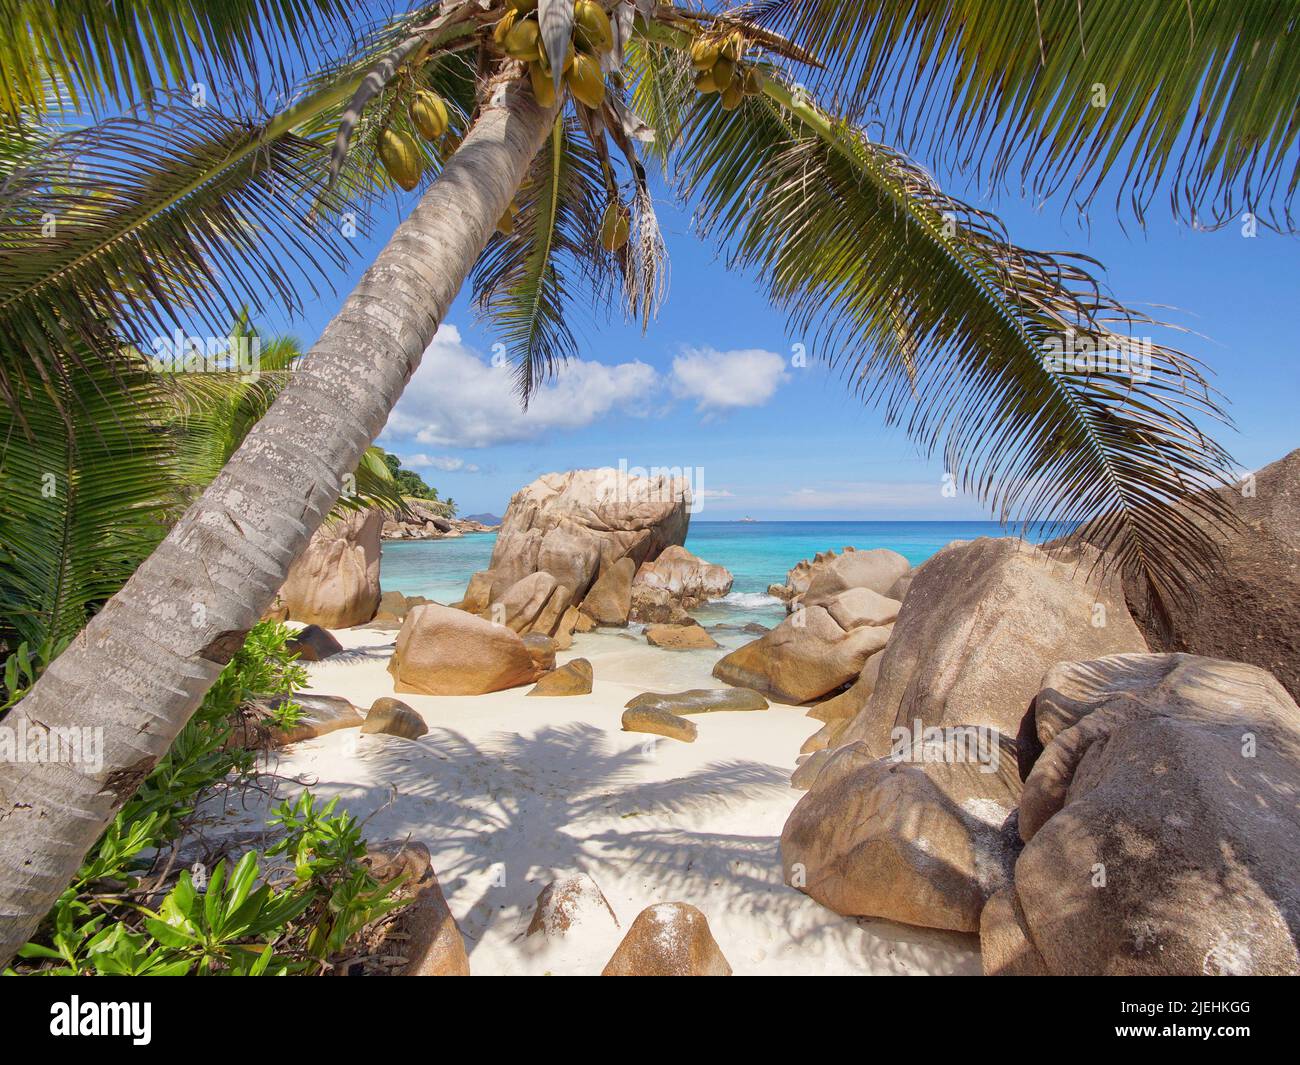 Seychellen, La Dique, Anse Source d`Argent, Palmen und Felsen am Strand, Stock Photo